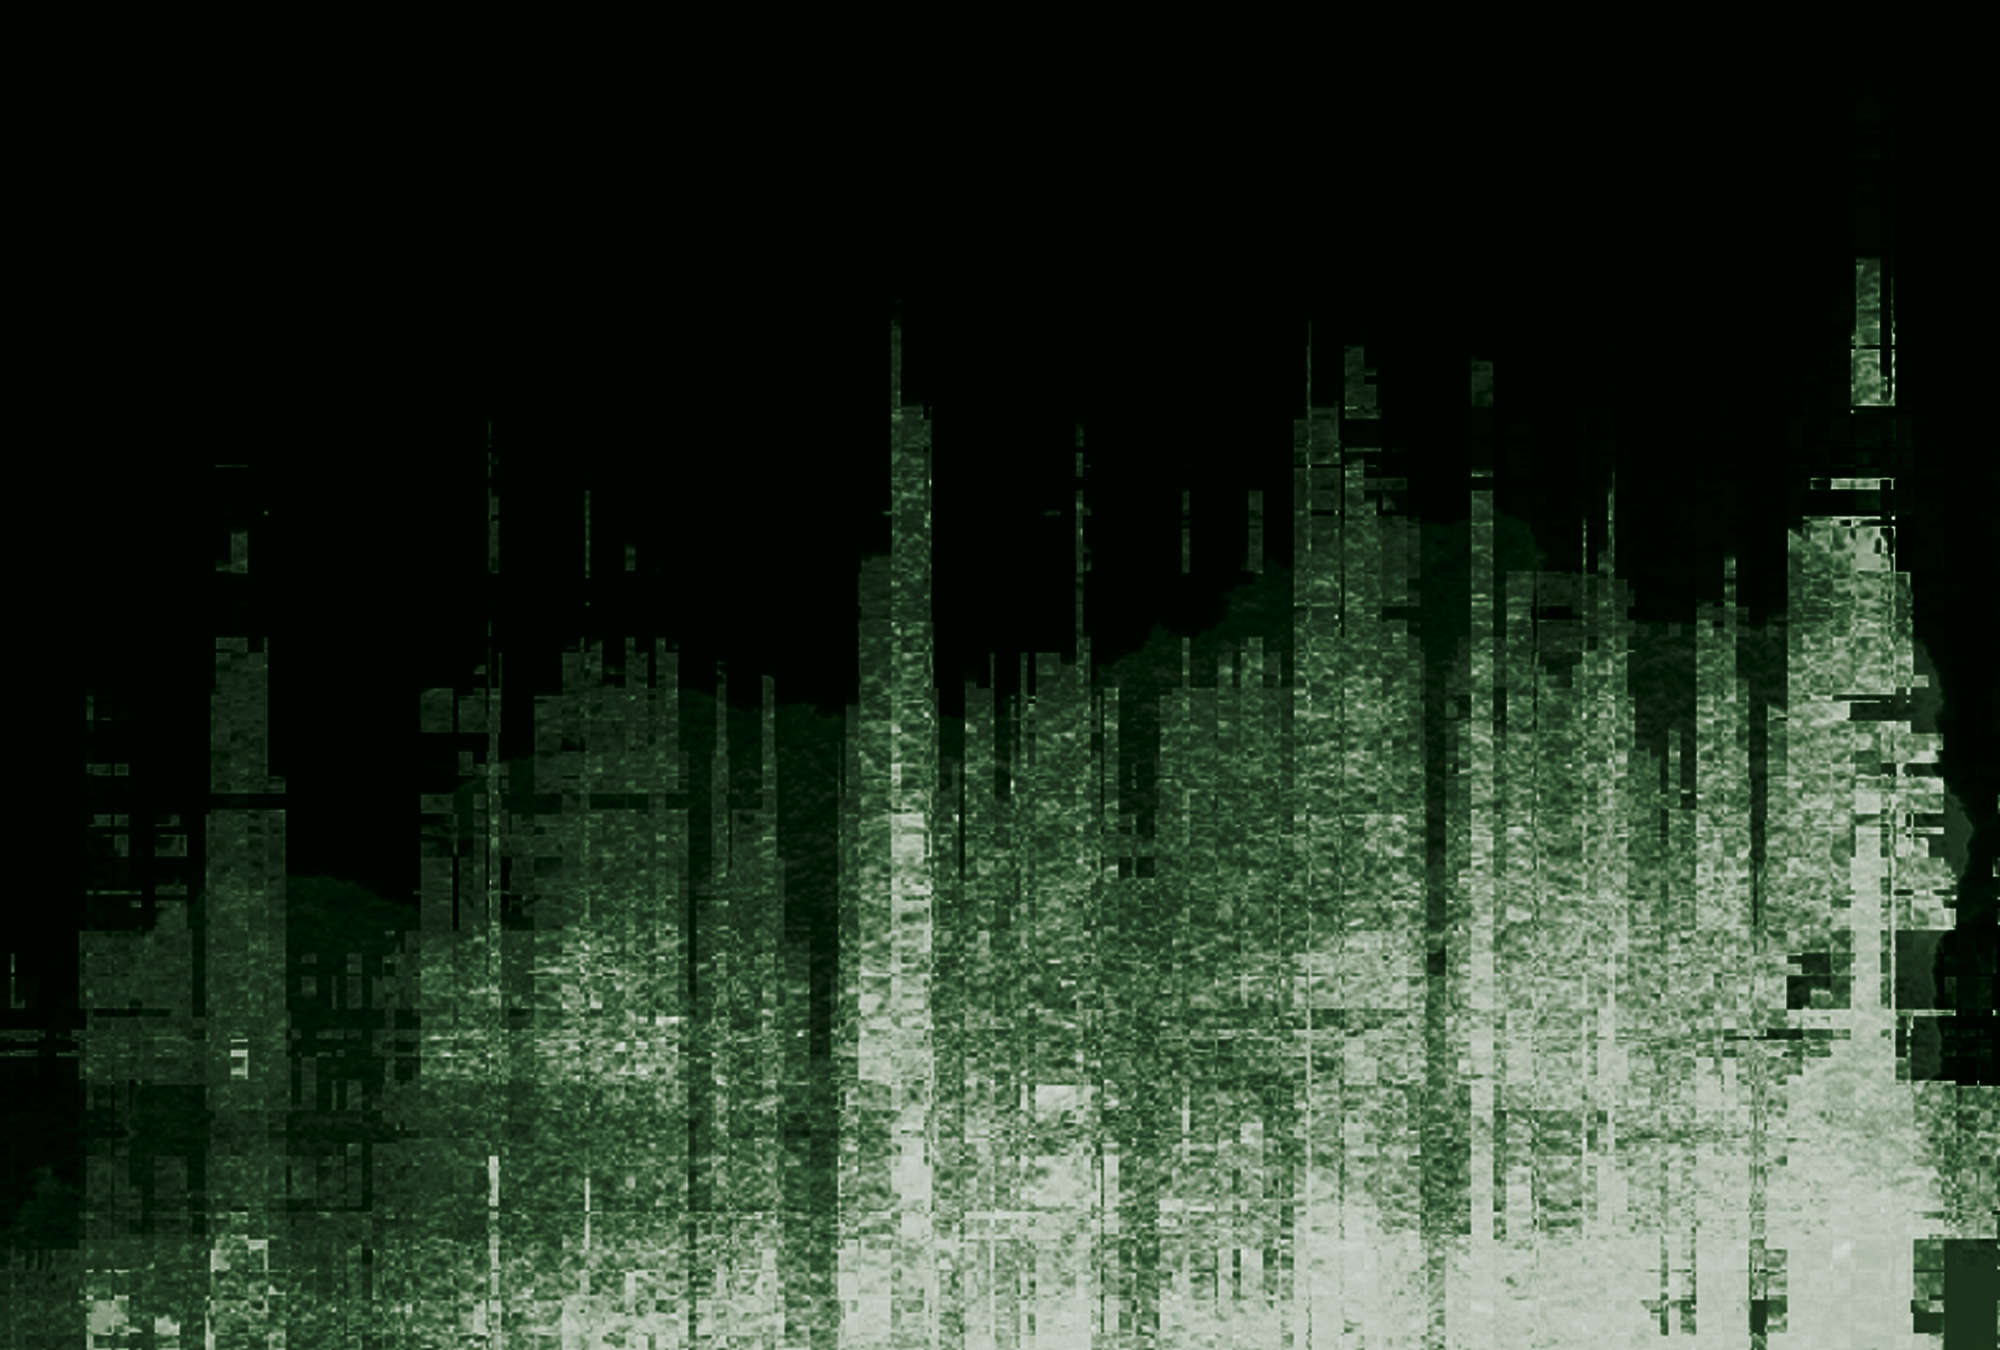             Fototapete in Schwarz mit abstraktem Linienmuster – Grün, Schwarz, Weiß
        